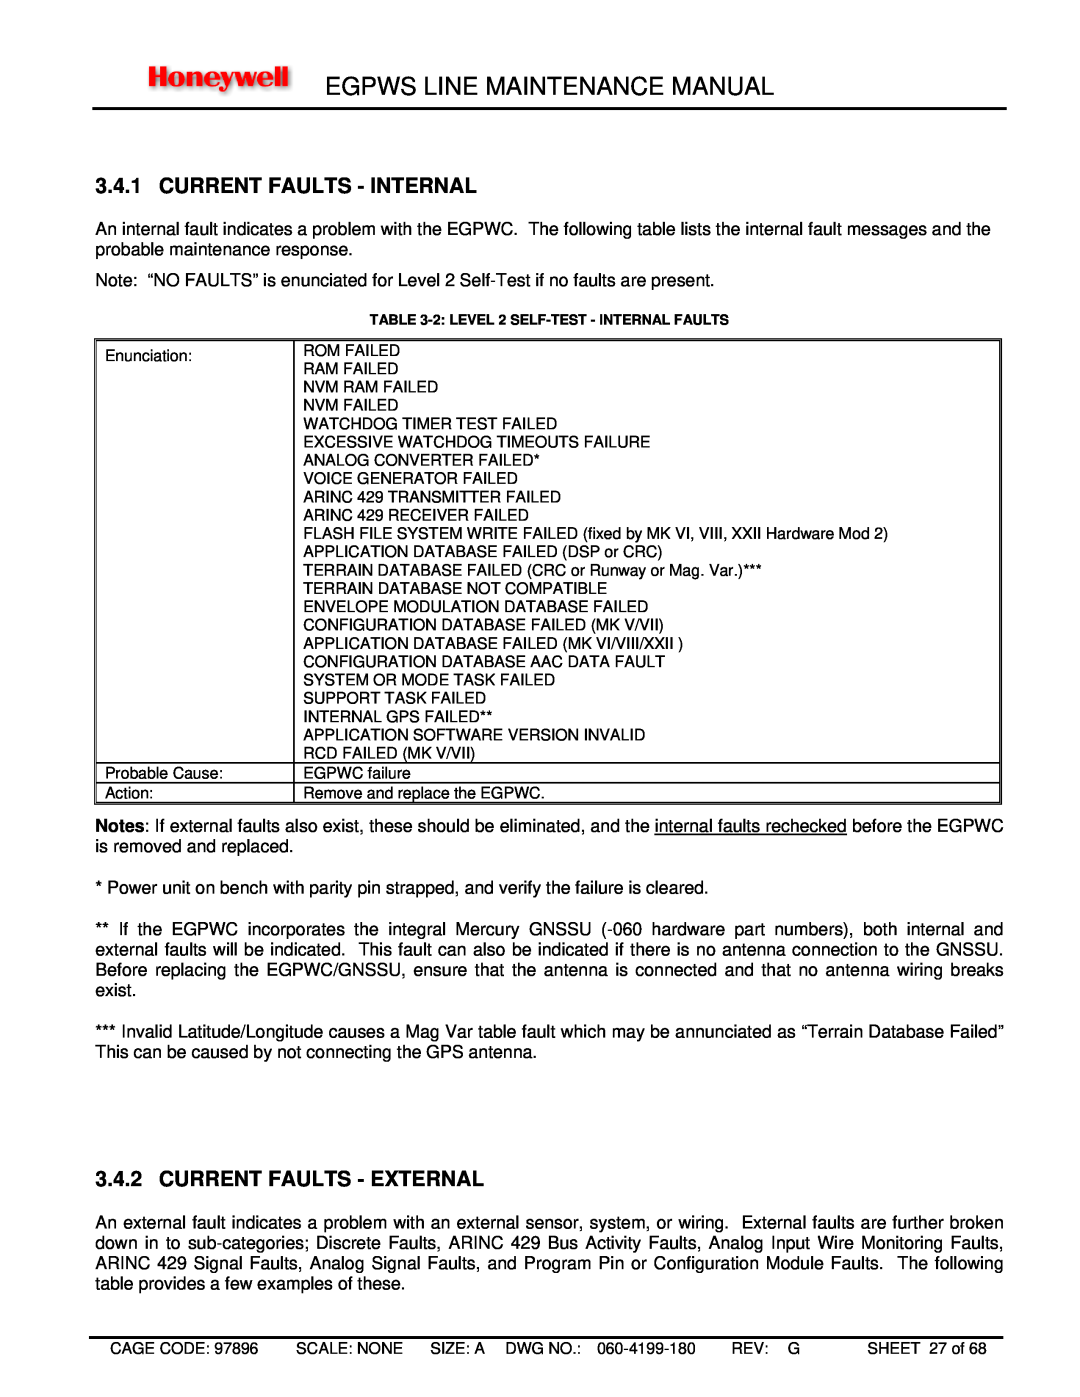 Honeywell MK XXII, MK VIII manual Current Faults - Internal, Current Faults - External, Egpws Line Maintenance Manual 